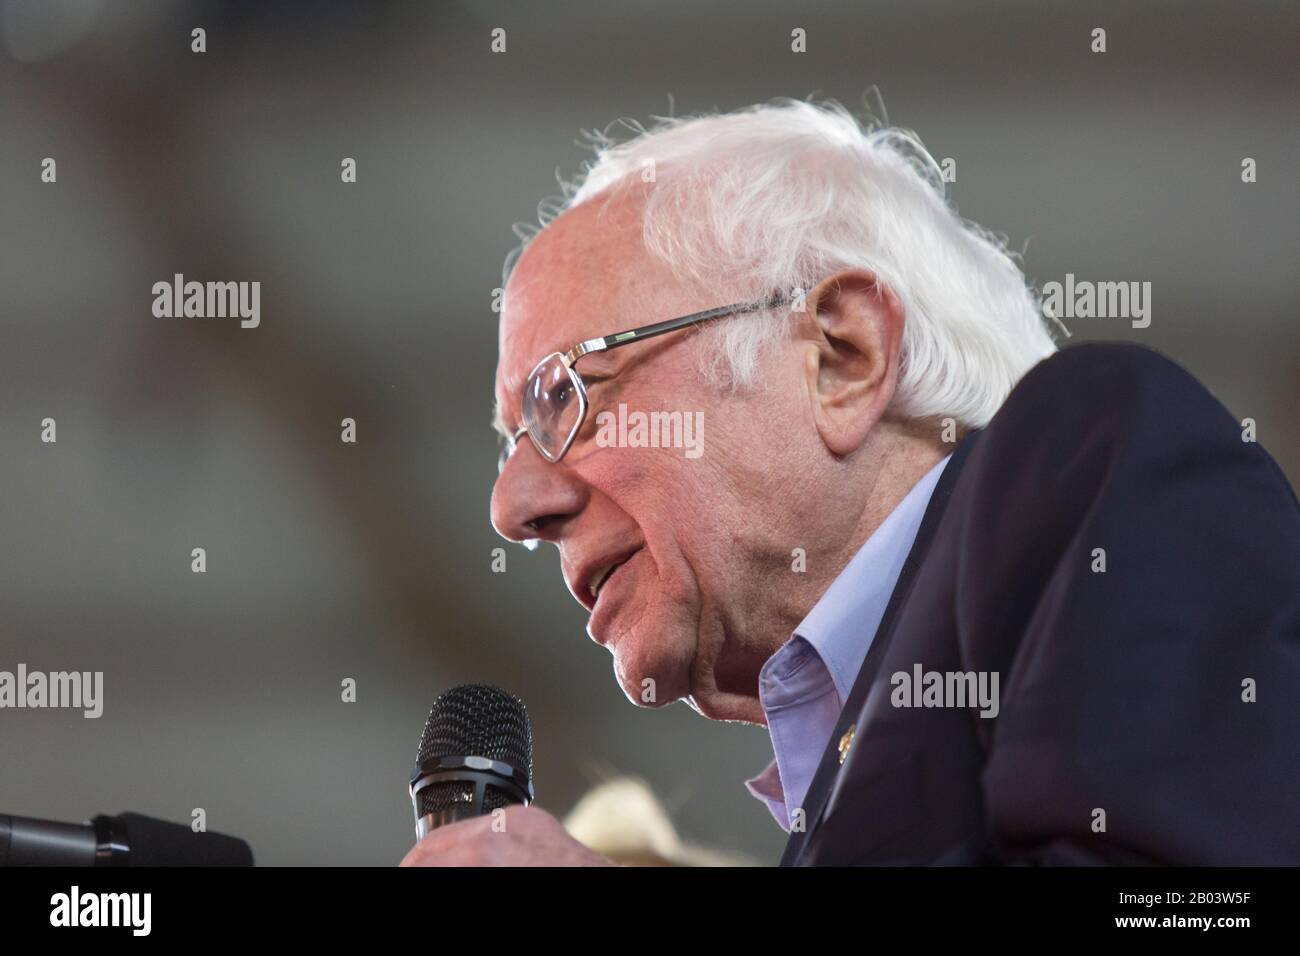 Le sénateur américain BERNIE SANDERS s'adresse aux partisans lors d'un rassemblement à Tacoma, Washington, le lundi 17 février 2020. Sanders est en lice pour la nomination démocratique de 2020 pour le président contre un champ de candidats bondés. Banque D'Images